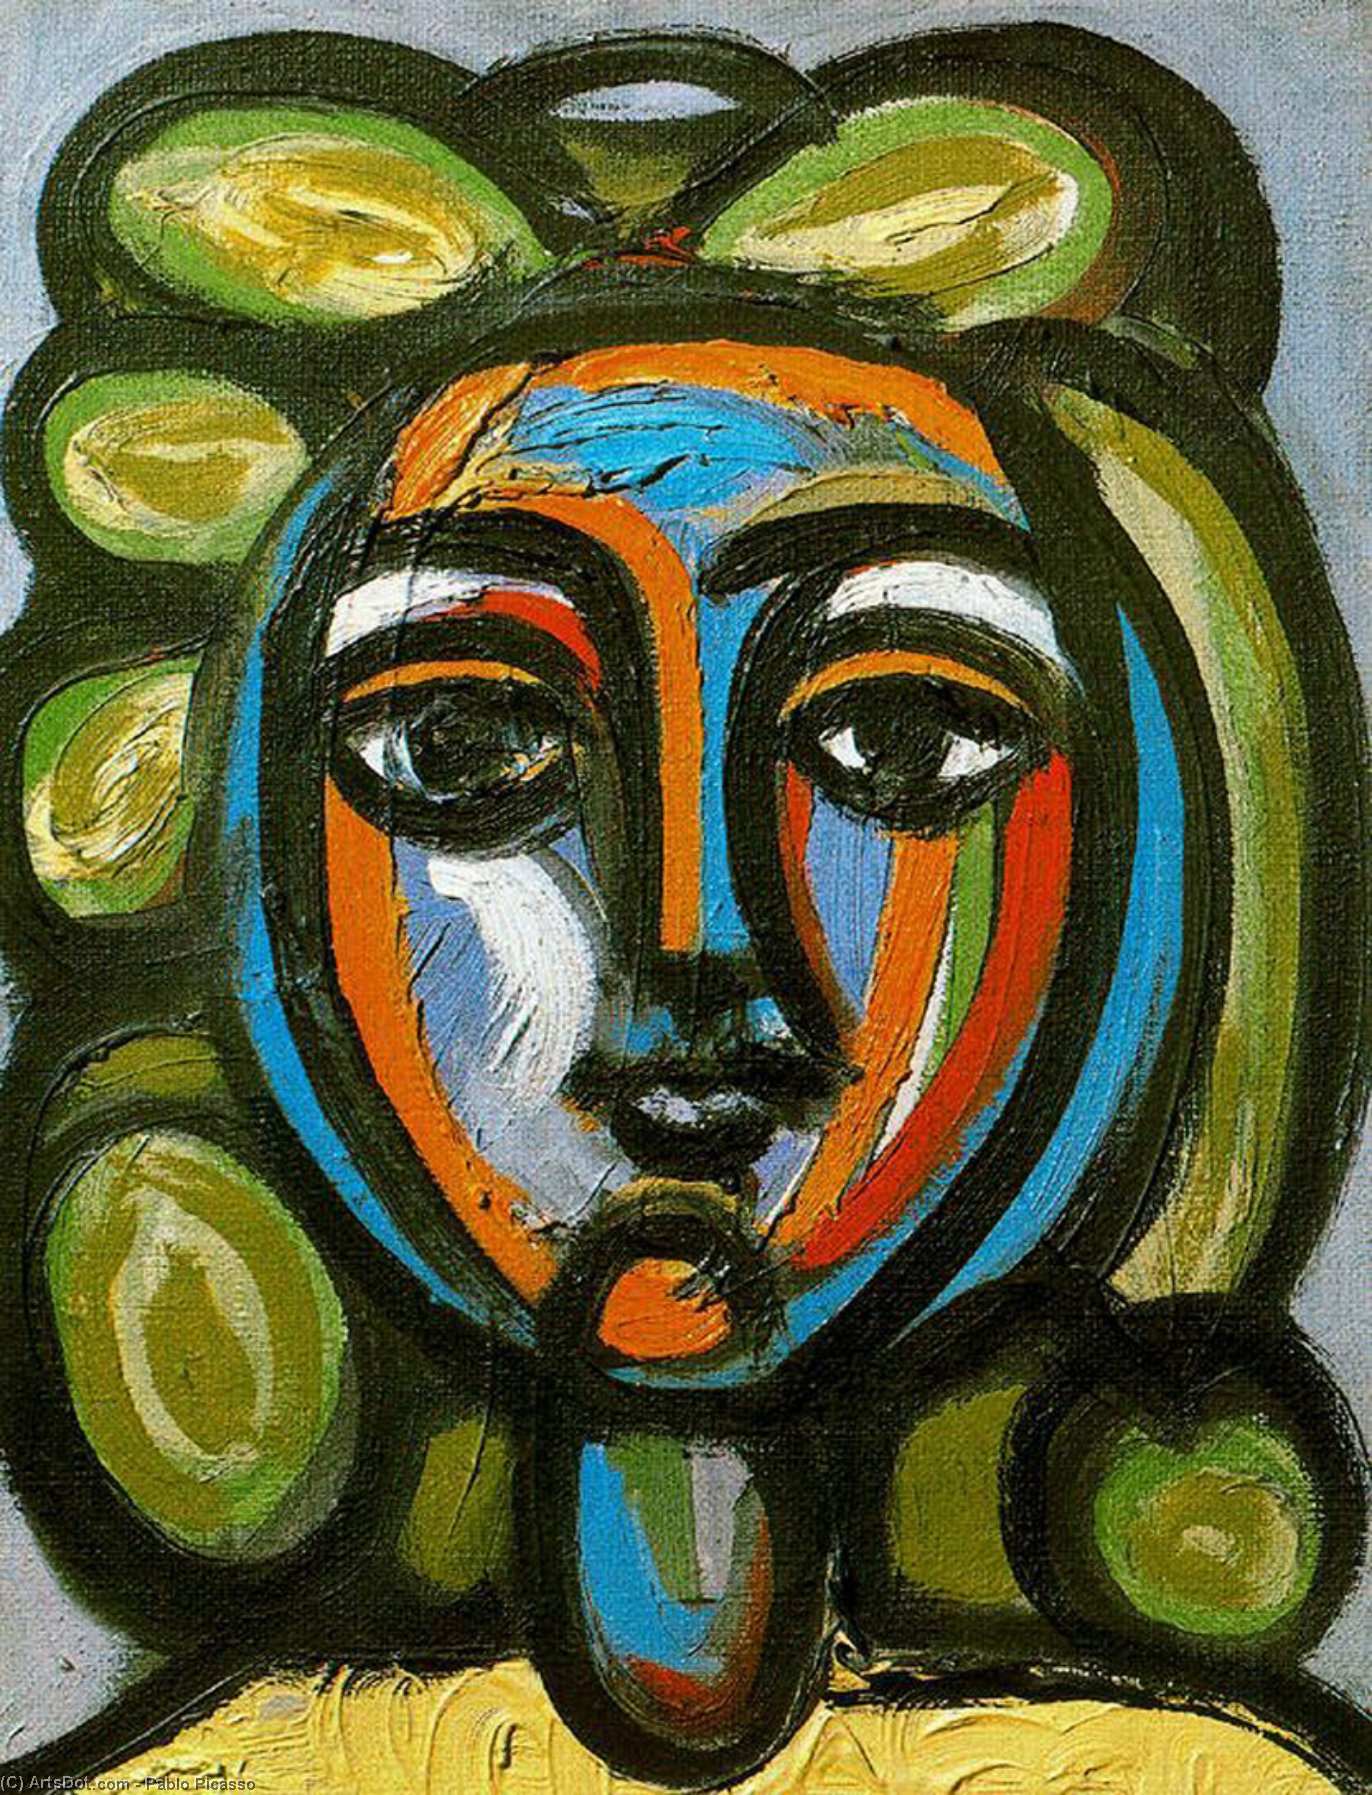 Wikoo.org - موسوعة الفنون الجميلة - اللوحة، العمل الفني Pablo Picasso - Cabeza de mujer con bucles verdes